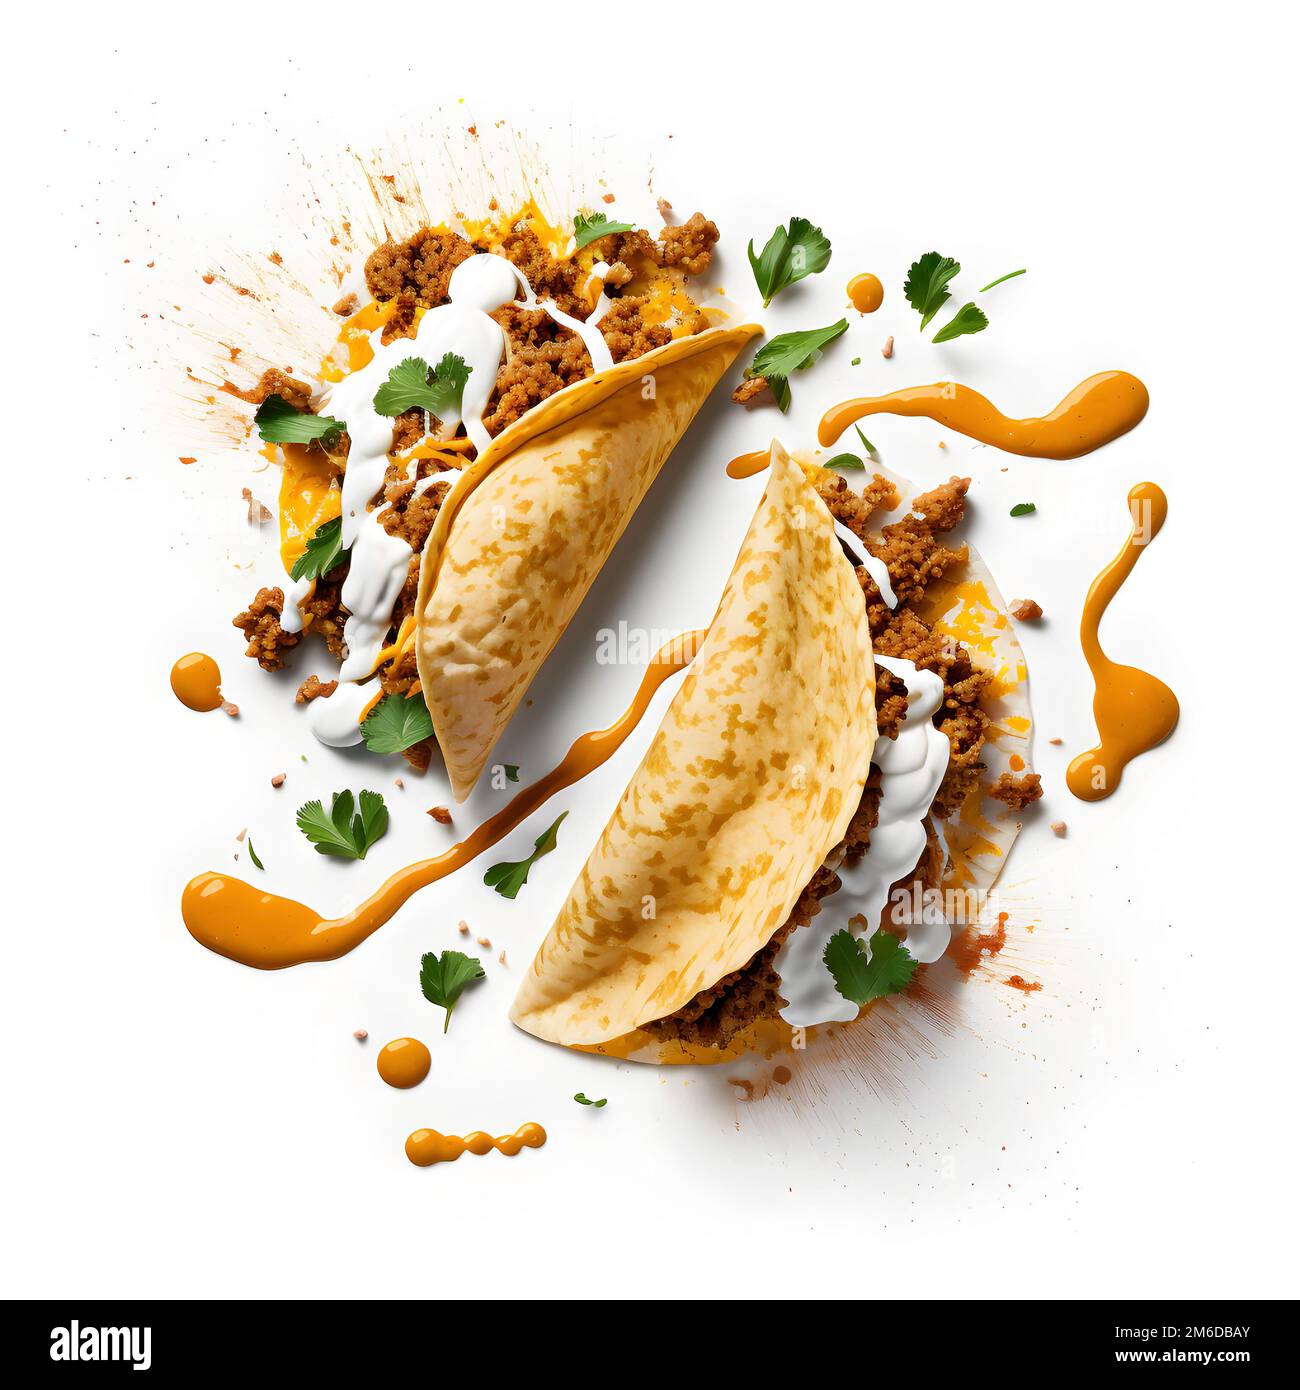 Tacos gustosi con avocado, salsa e lime su sfondo bianco, cibo di strada in america latina Foto Stock